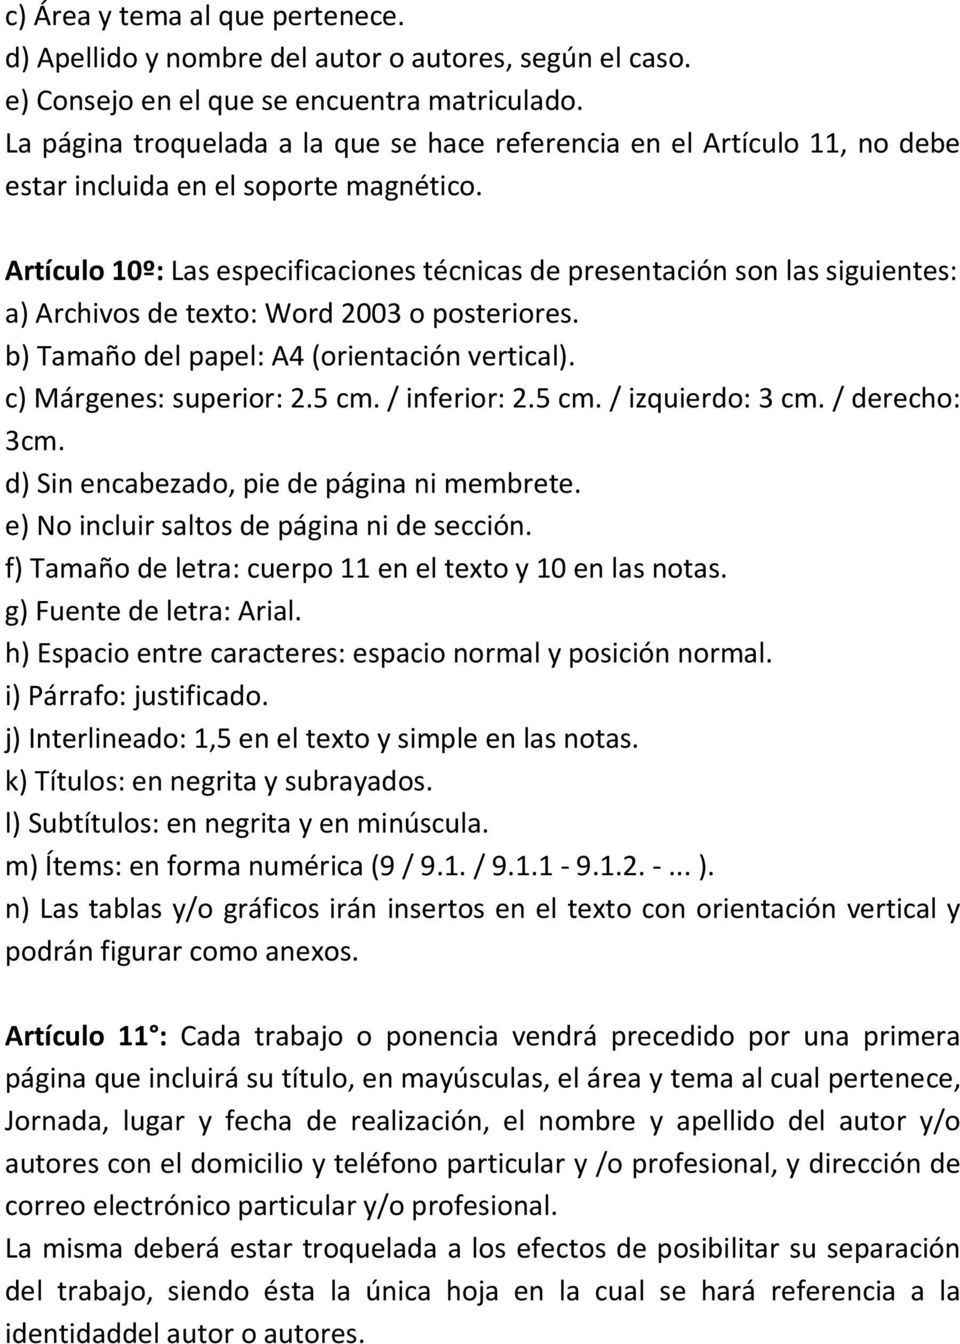 Artículo 10º: Las especificaciones técnicas de presentación son las siguientes: a) Archivos de texto: Word 2003 o posteriores. b) Tamaño del papel: A4 (orientación vertical). c) Márgenes: superior: 2.